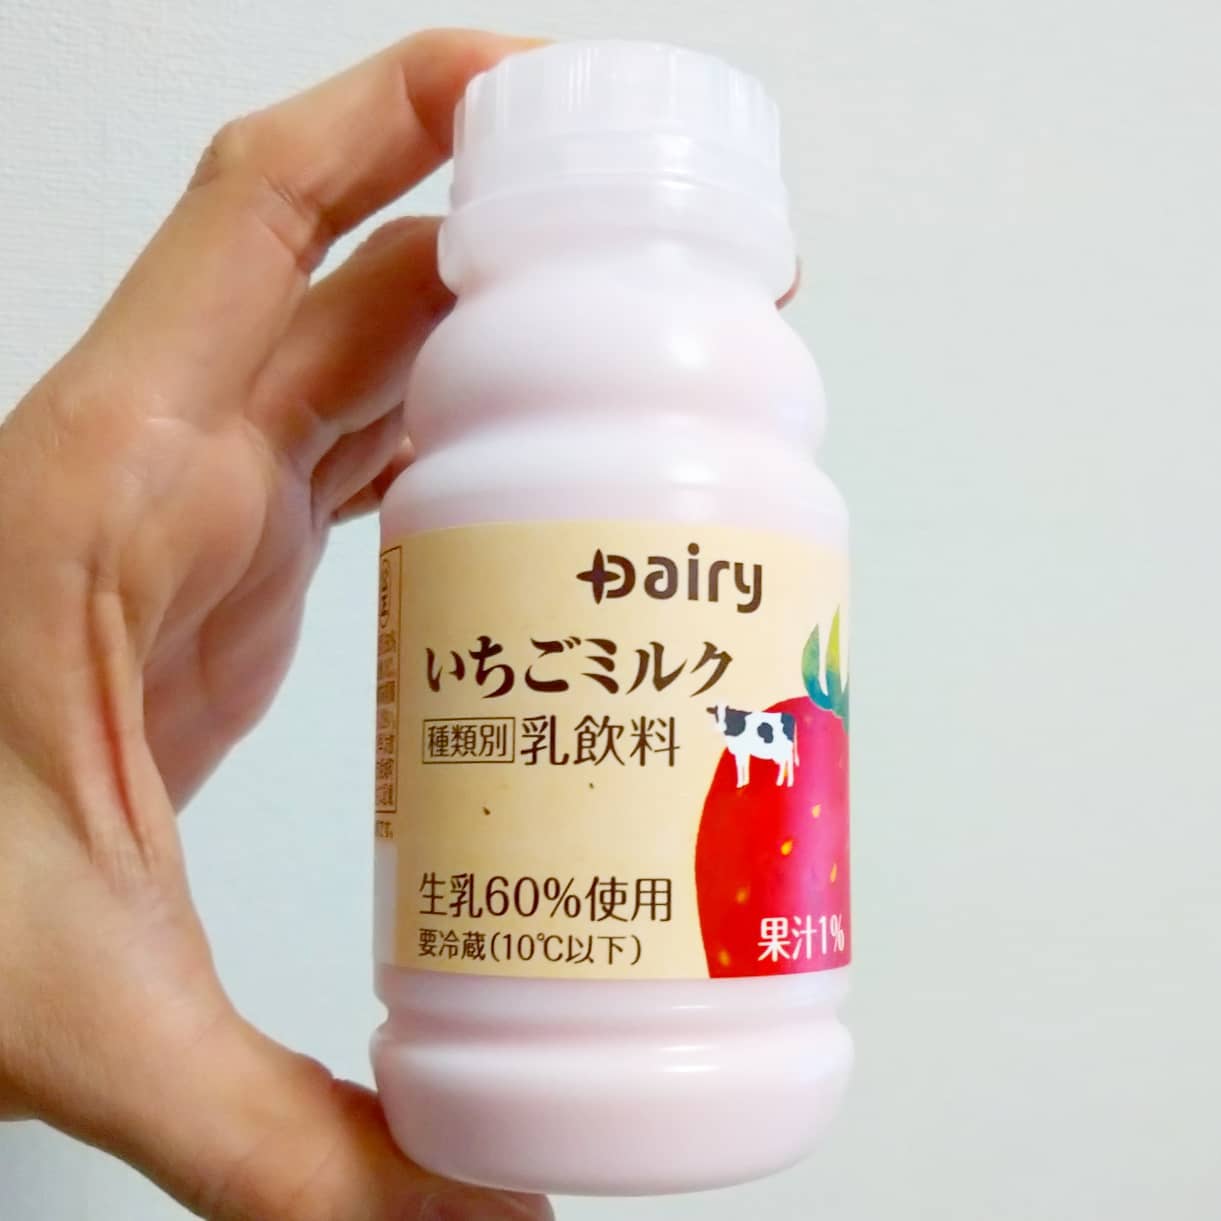 #いちごミルクラブ #南日本酪農協同  #いちごミルク 謎イチゴ系－－☆－－本物イチゴ系甘さ強め系－－☆－－控え目系こってり系－－☆－－さっぱり系超ミルク系－☆－－－ほんのり系おもいで度－－☆－－ #侍猫度謎苺牛乳系の味ですがね、牛乳をいつもより感じるいちごミルクだね。スーパーで買ったやつだね#いちごオレ #いちごオレ味 #いちごミルク #いちごミルクみたい #いちご牛乳 #いちご牛乳味 #イチゴ牛乳 #いちご牛乳クラブ #苺牛乳 #苺牛乳が好き #苺ミルク #苺スイーツ #苺 #苺好きに生まれたからには #メソギア派 #糖分 #いちごミルク味 #スイーツ #スイーツ好き #スイーツスタグラム #スイーツタイム #スイーツ写真 #strawberry #strawberrymilk